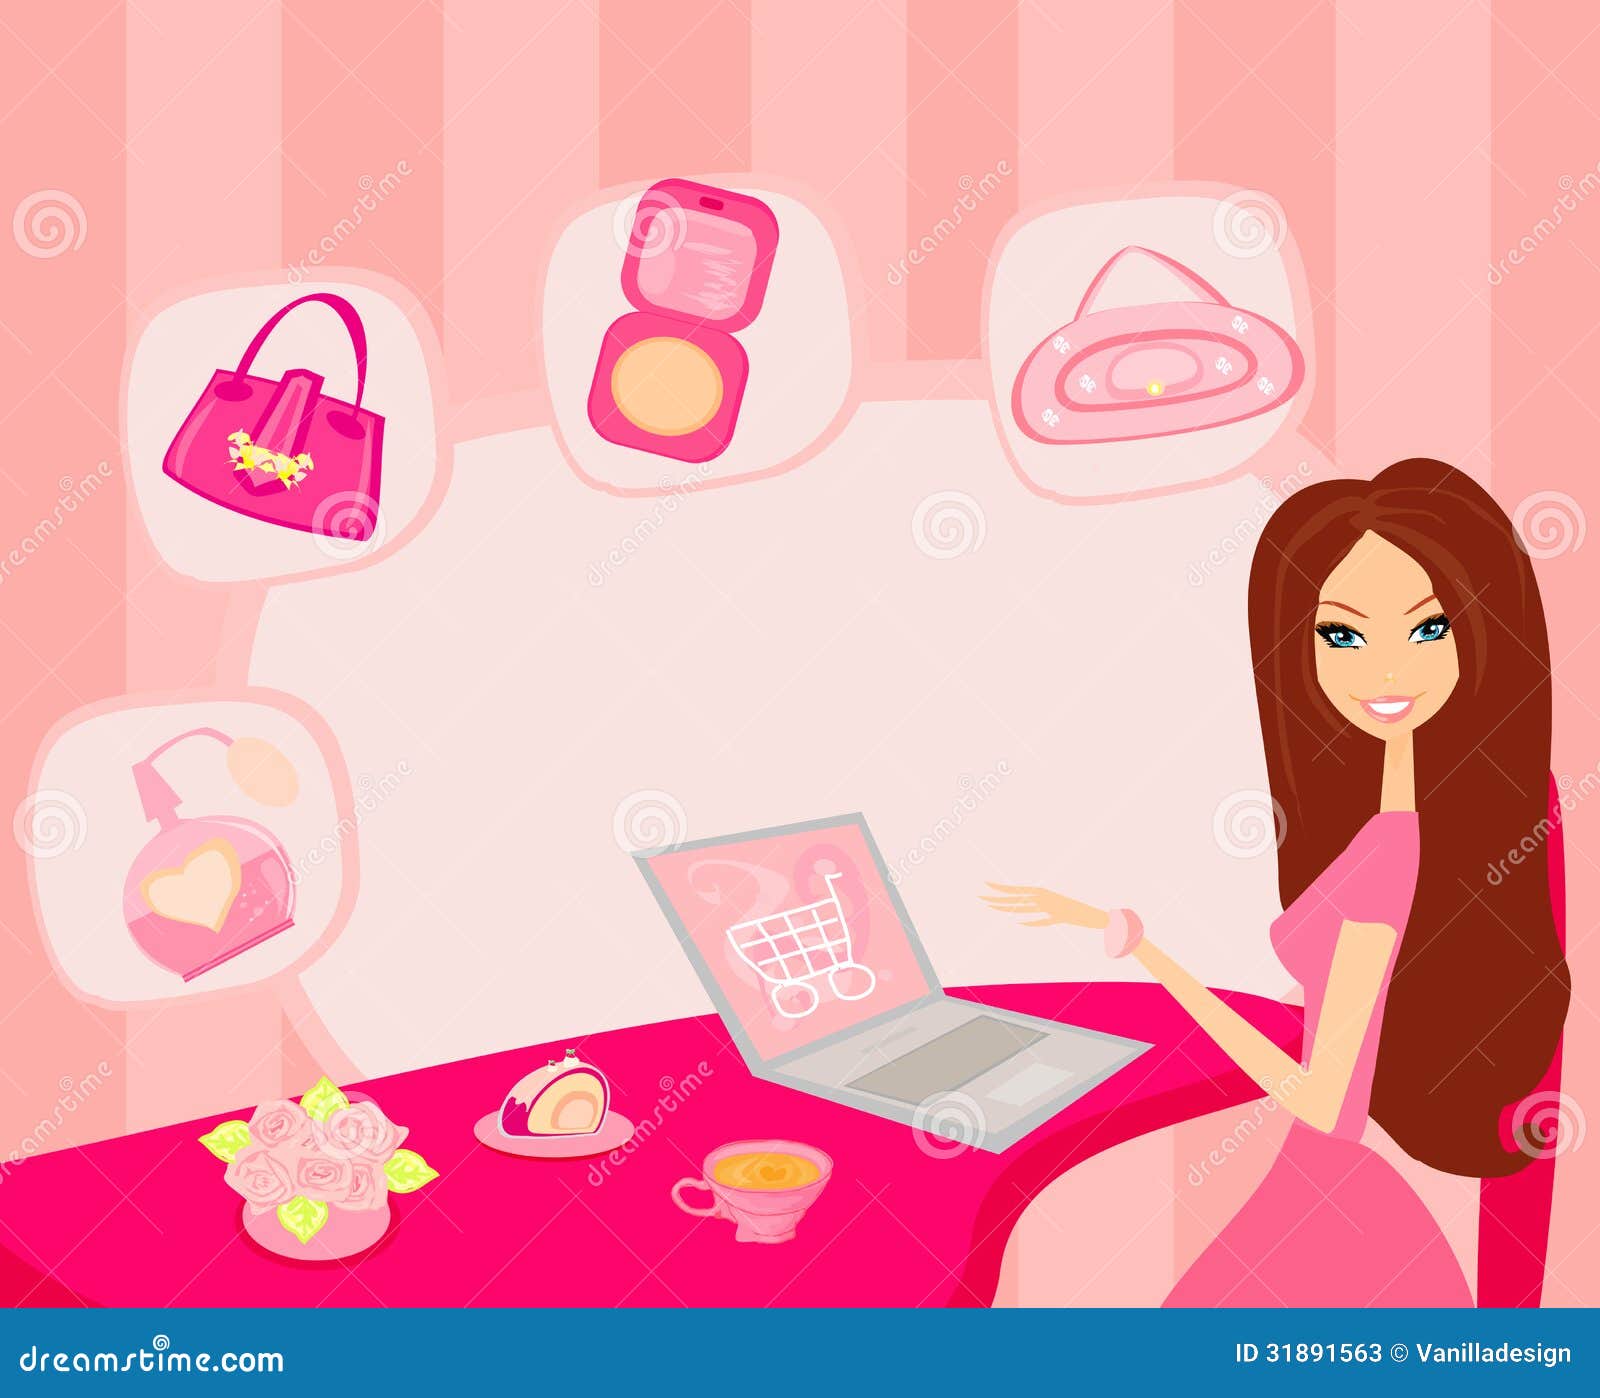 girl online shopping